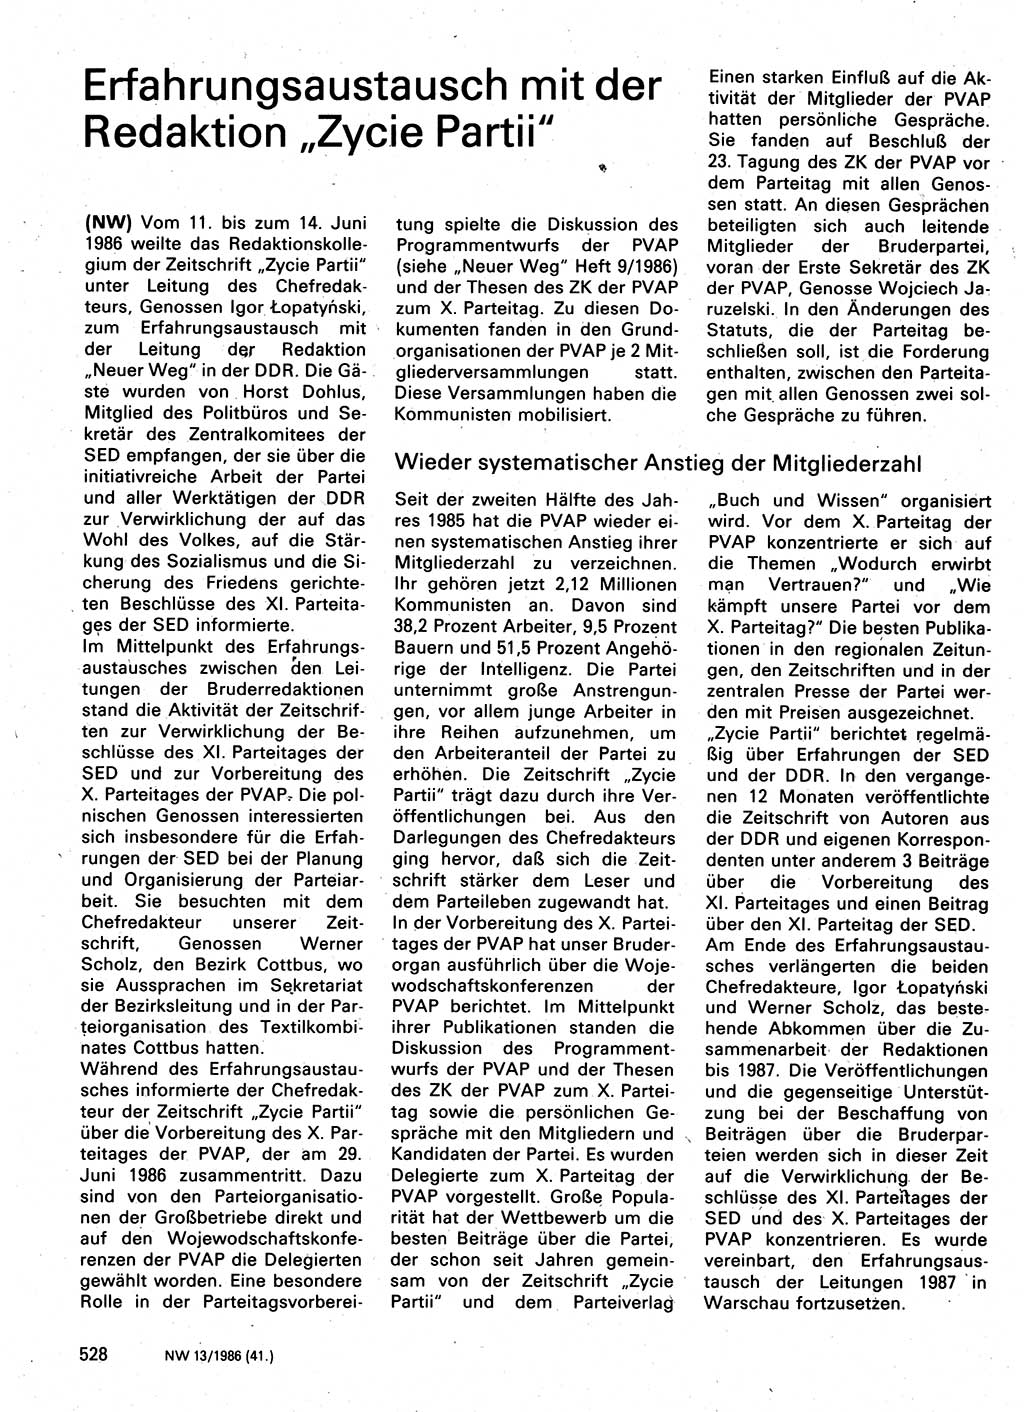 Neuer Weg (NW), Organ des Zentralkomitees (ZK) der SED (Sozialistische Einheitspartei Deutschlands) für Fragen des Parteilebens, 41. Jahrgang [Deutsche Demokratische Republik (DDR)] 1986, Seite 528 (NW ZK SED DDR 1986, S. 528)